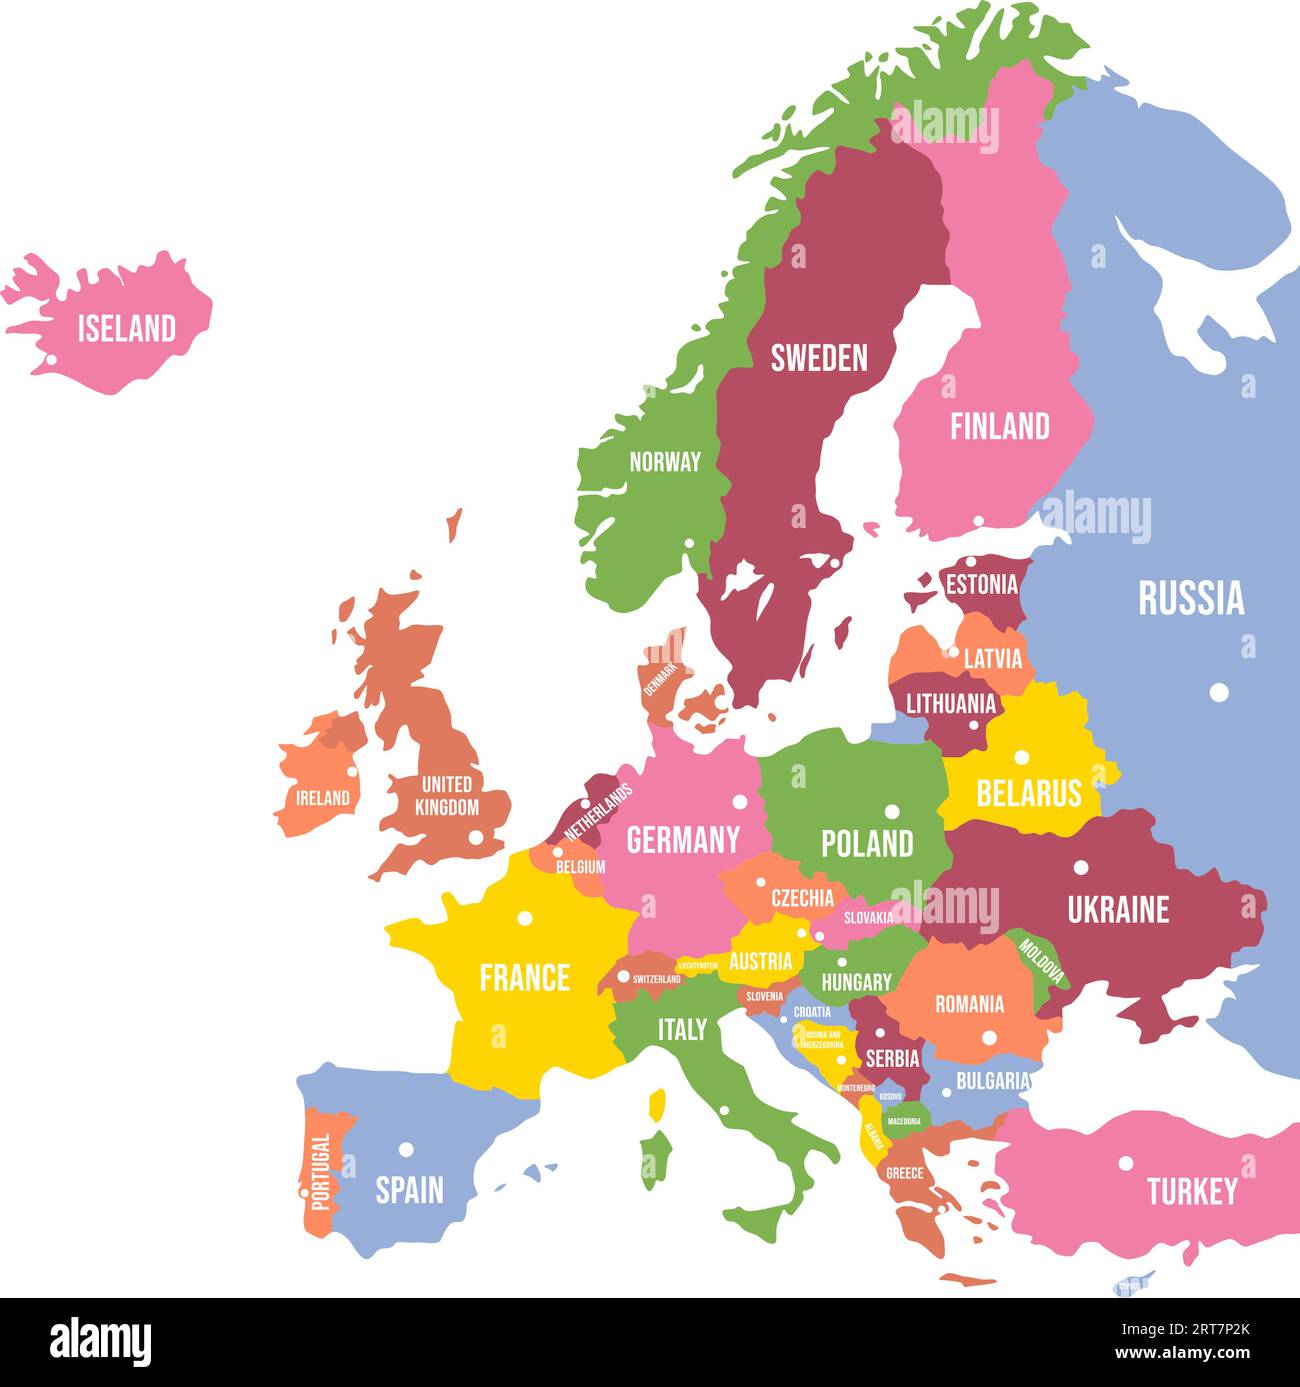 Farbenfrohe Europakarte. Länder und Grenzen, politische Karte des europäischen Kontinents mit Hauptstädten Vektor Illustration Stock Vektor